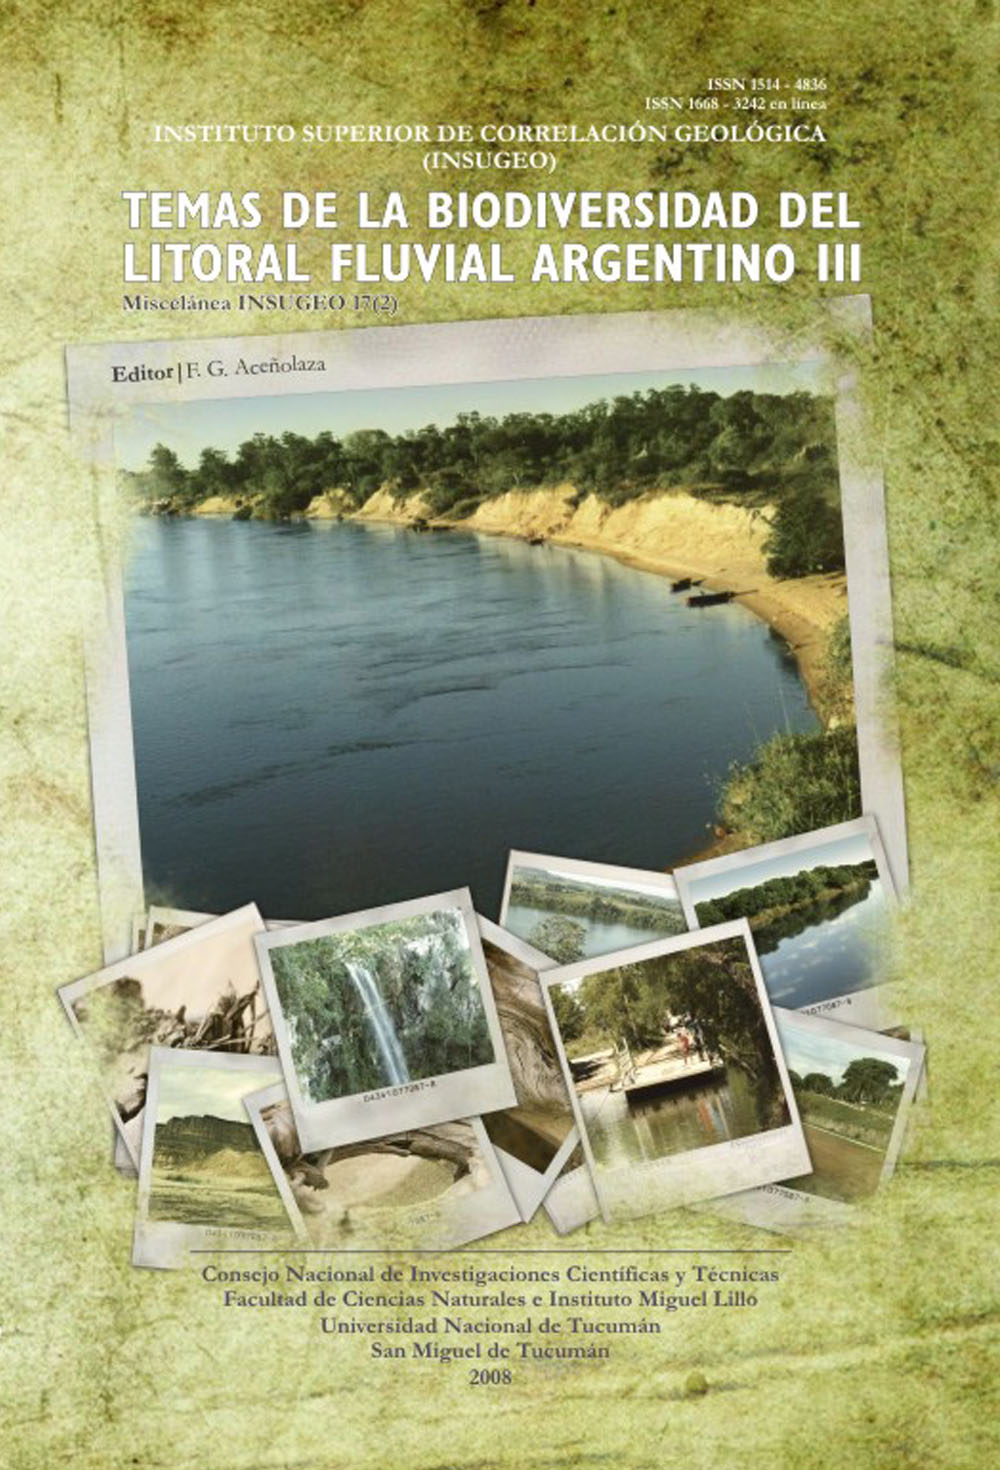 Temas de la biodiversidad del litoral fluvial argentino III